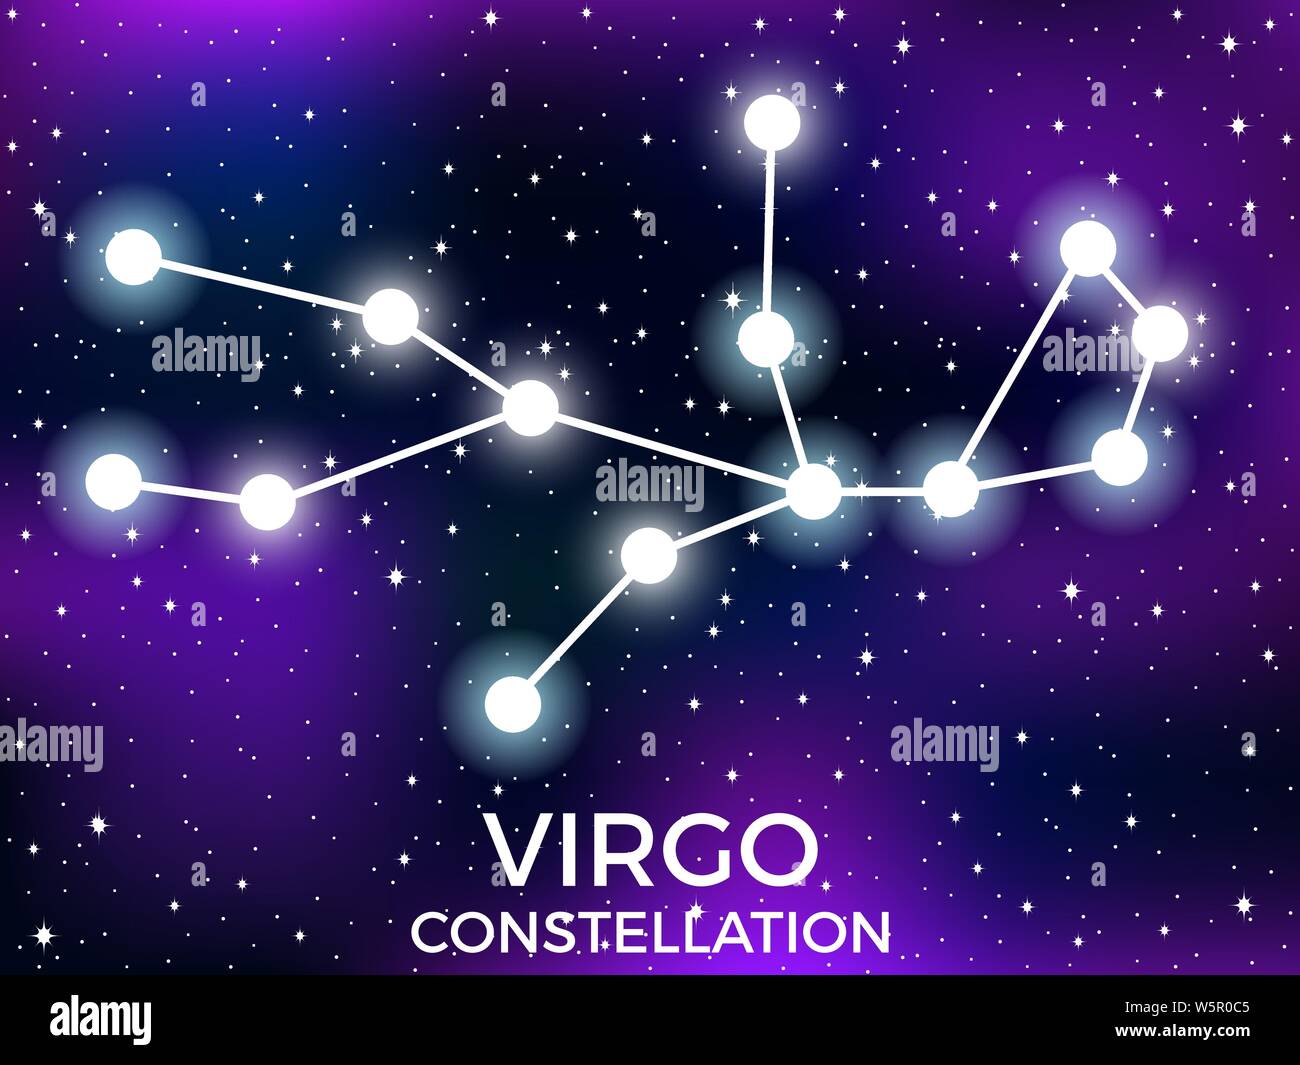 Virgo Constellation Nail Art Design - wide 6